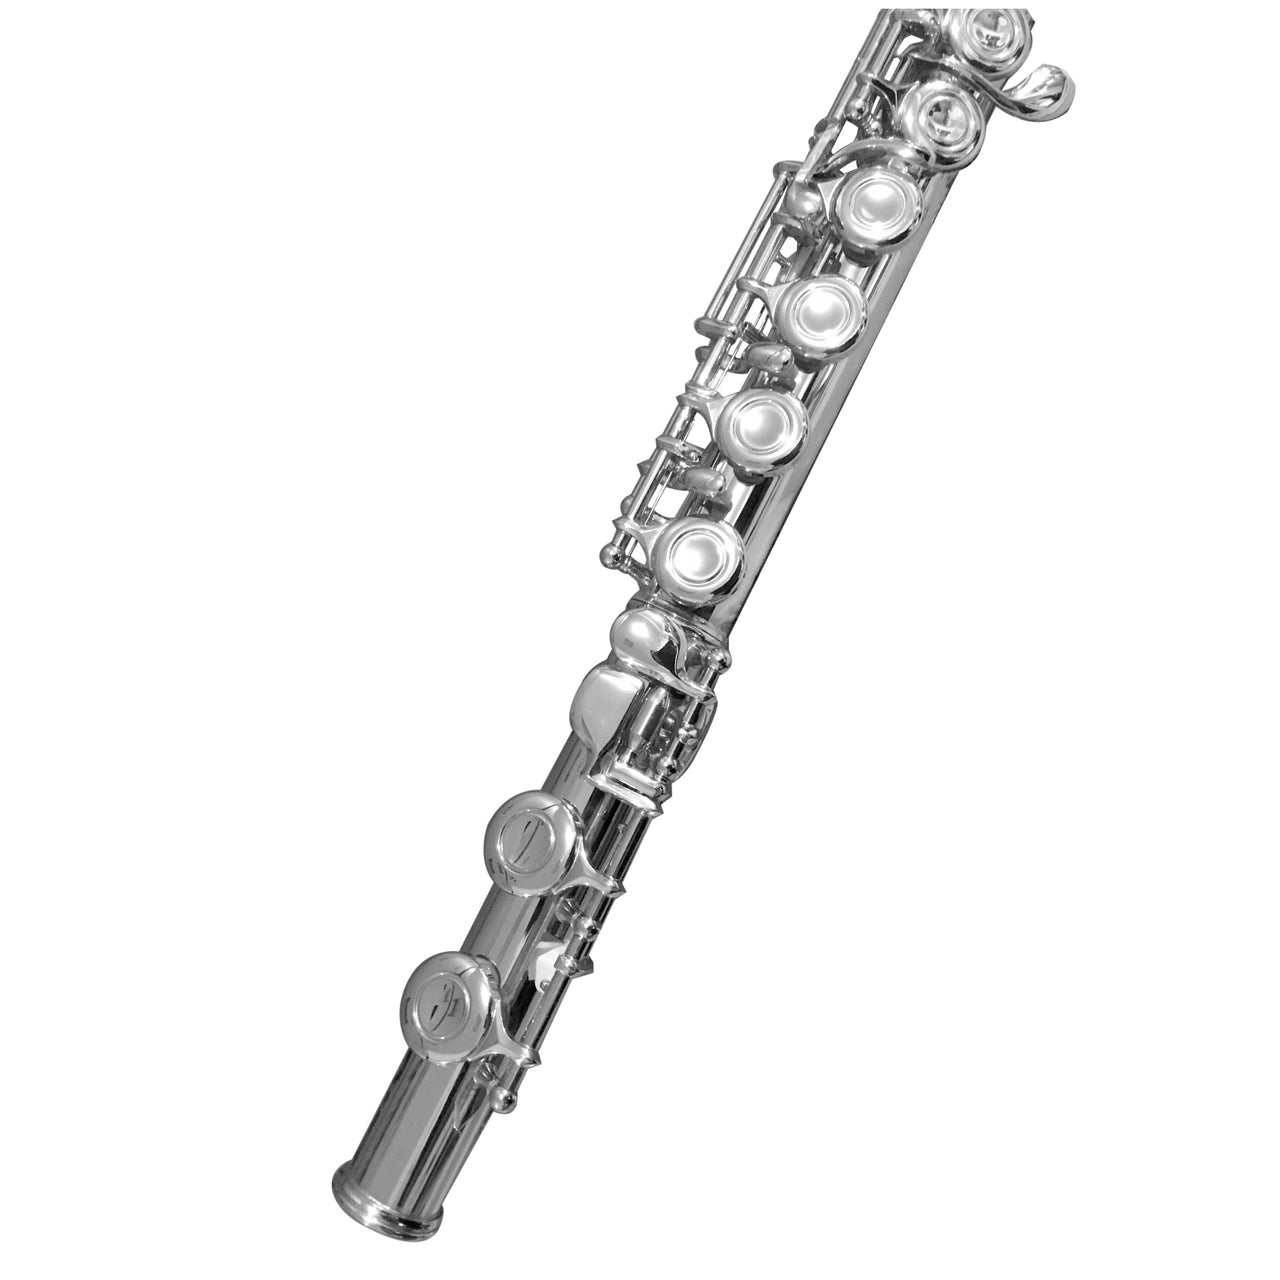 Flauta Transversal Century Cnft001 Tono Do Niquelada